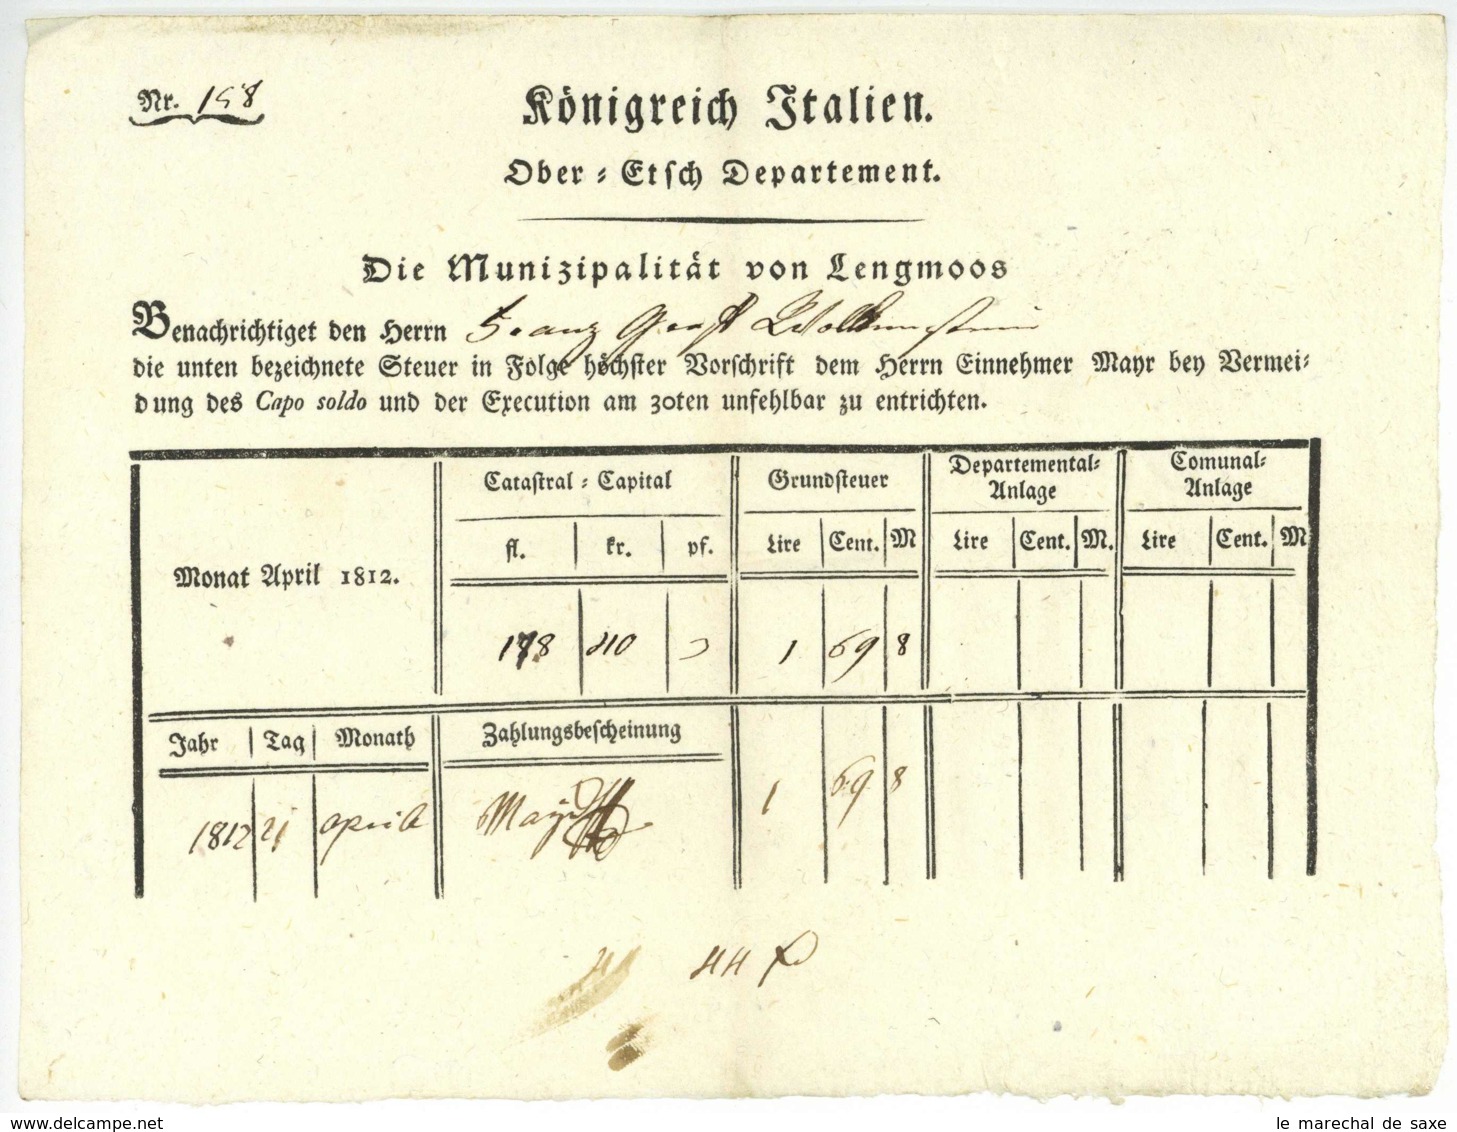 Königreich Italien 1812 Ober-Etsch-Departement LENGMOOS SUED TIROL Klobenstein Ritten Graf WOLKENSTEIN - Historical Documents